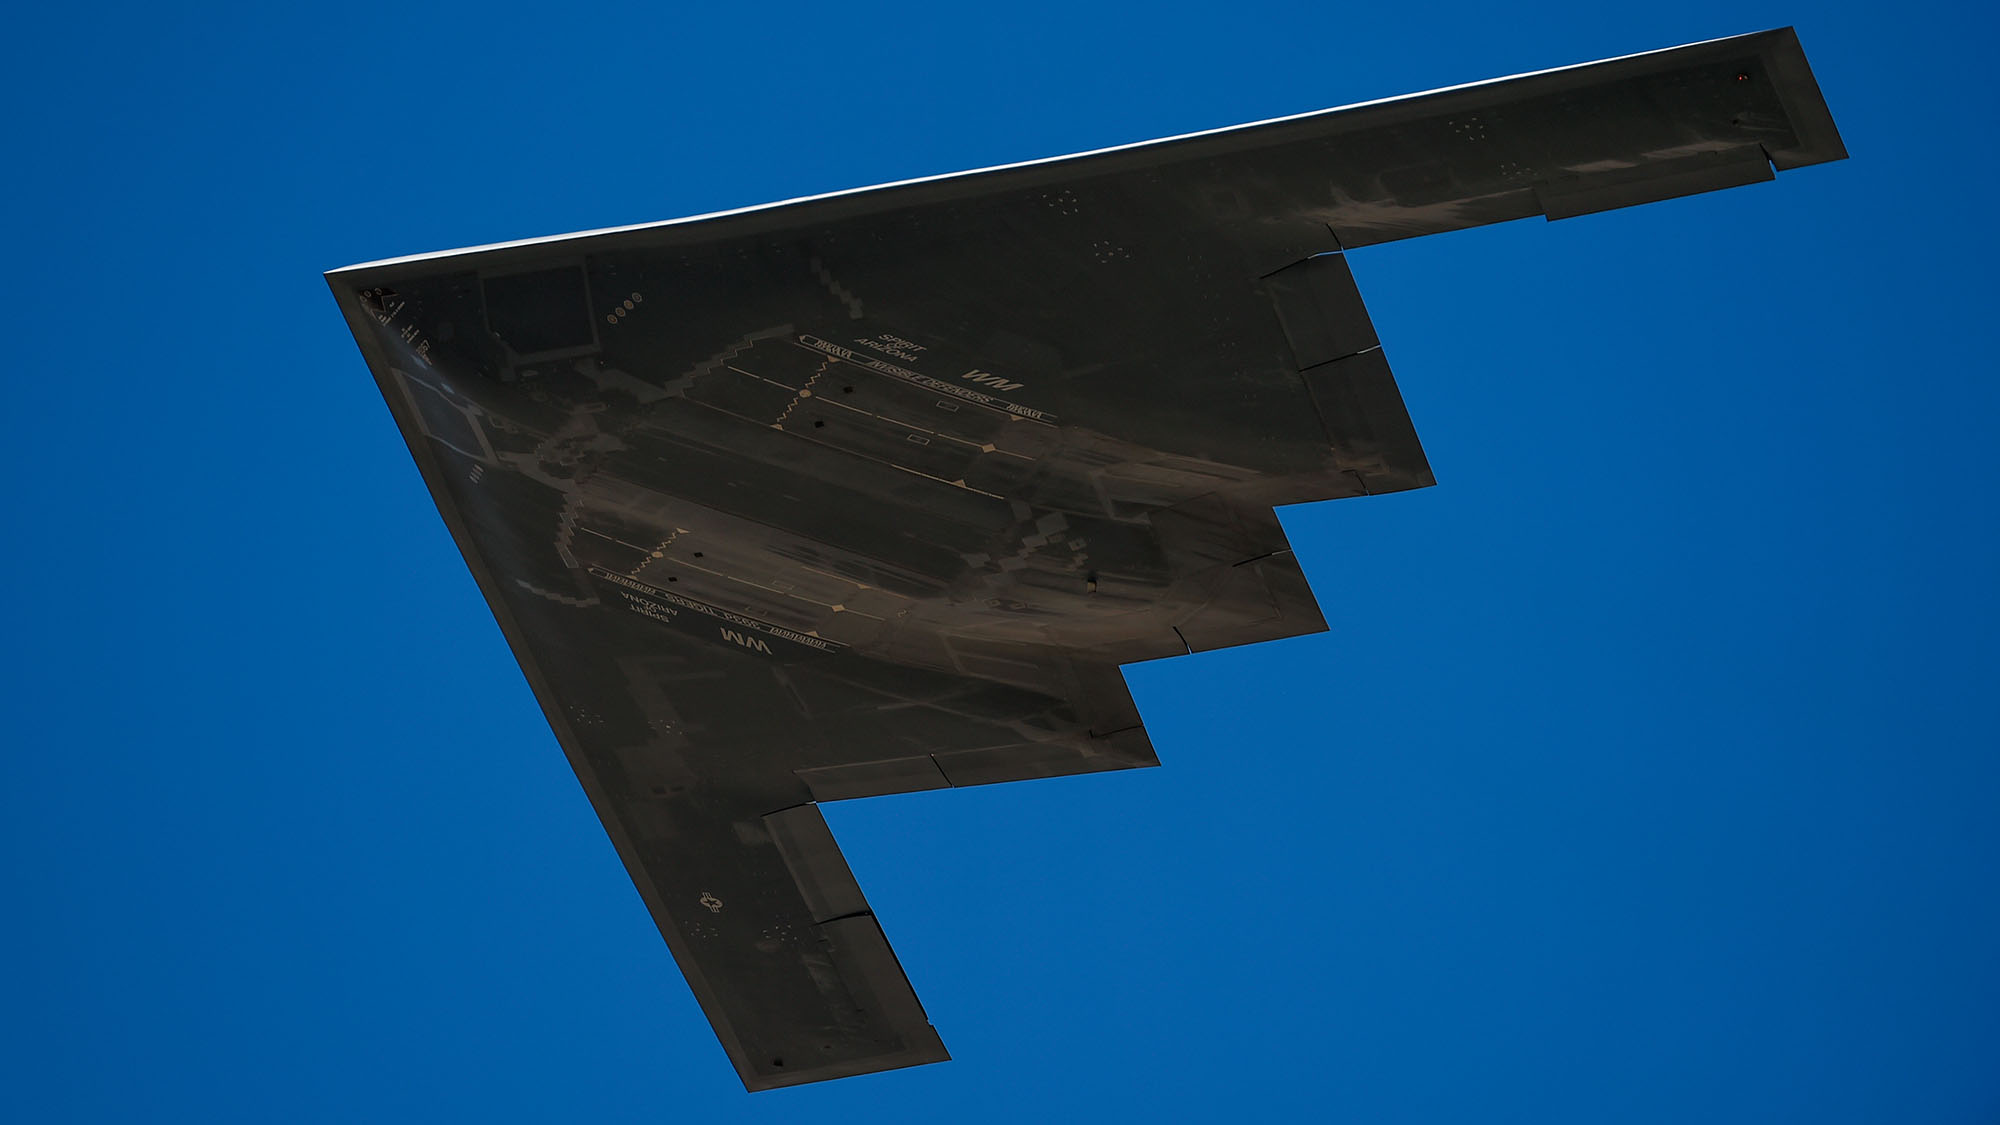 Bottom of B-2 Spirit Stealth Bomber flying in blue skies